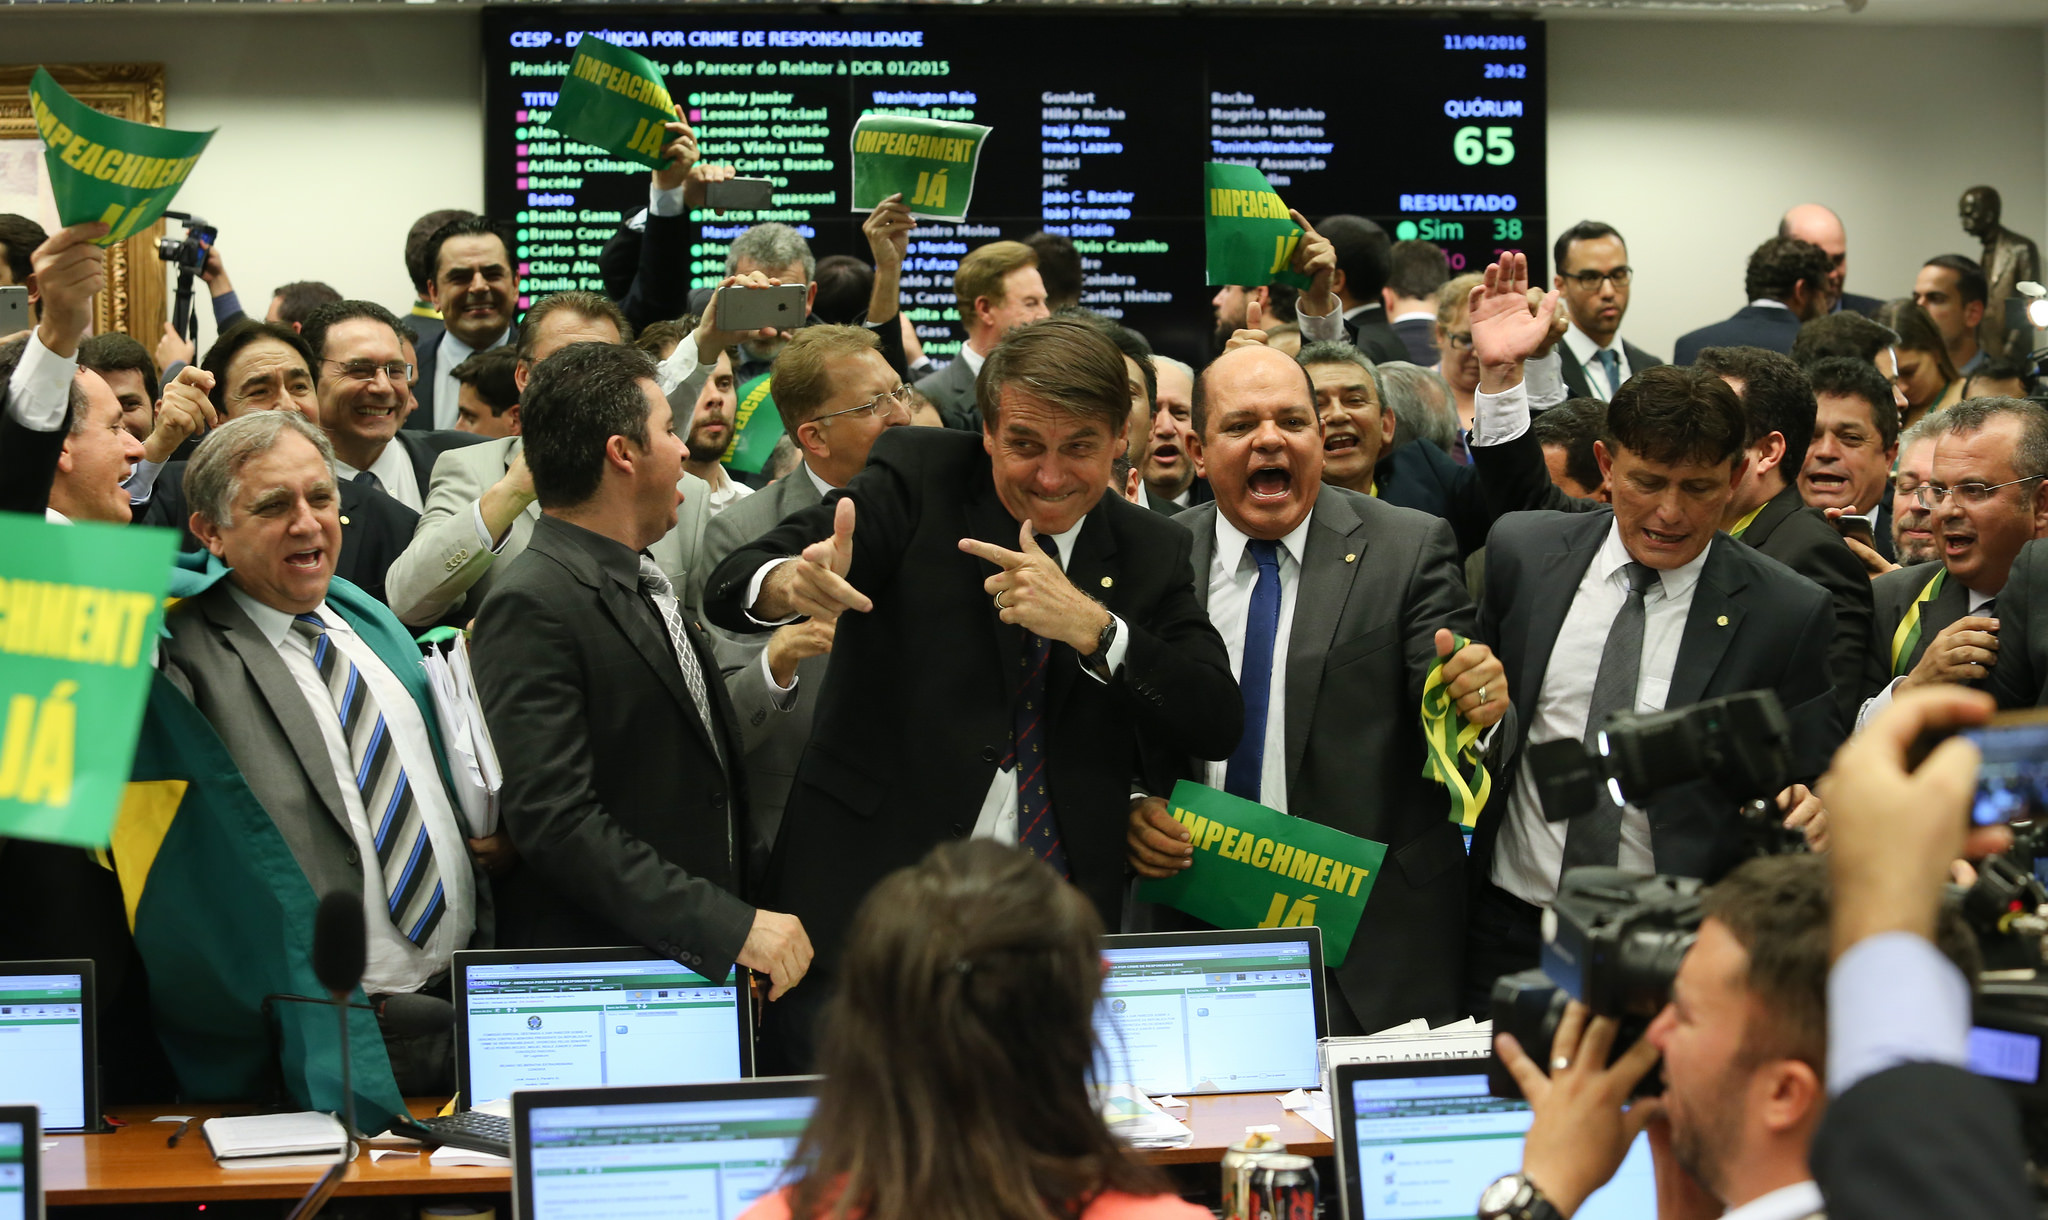 OAB/RJ vai ao STF para cassar mandato de Jair Bolsonaro